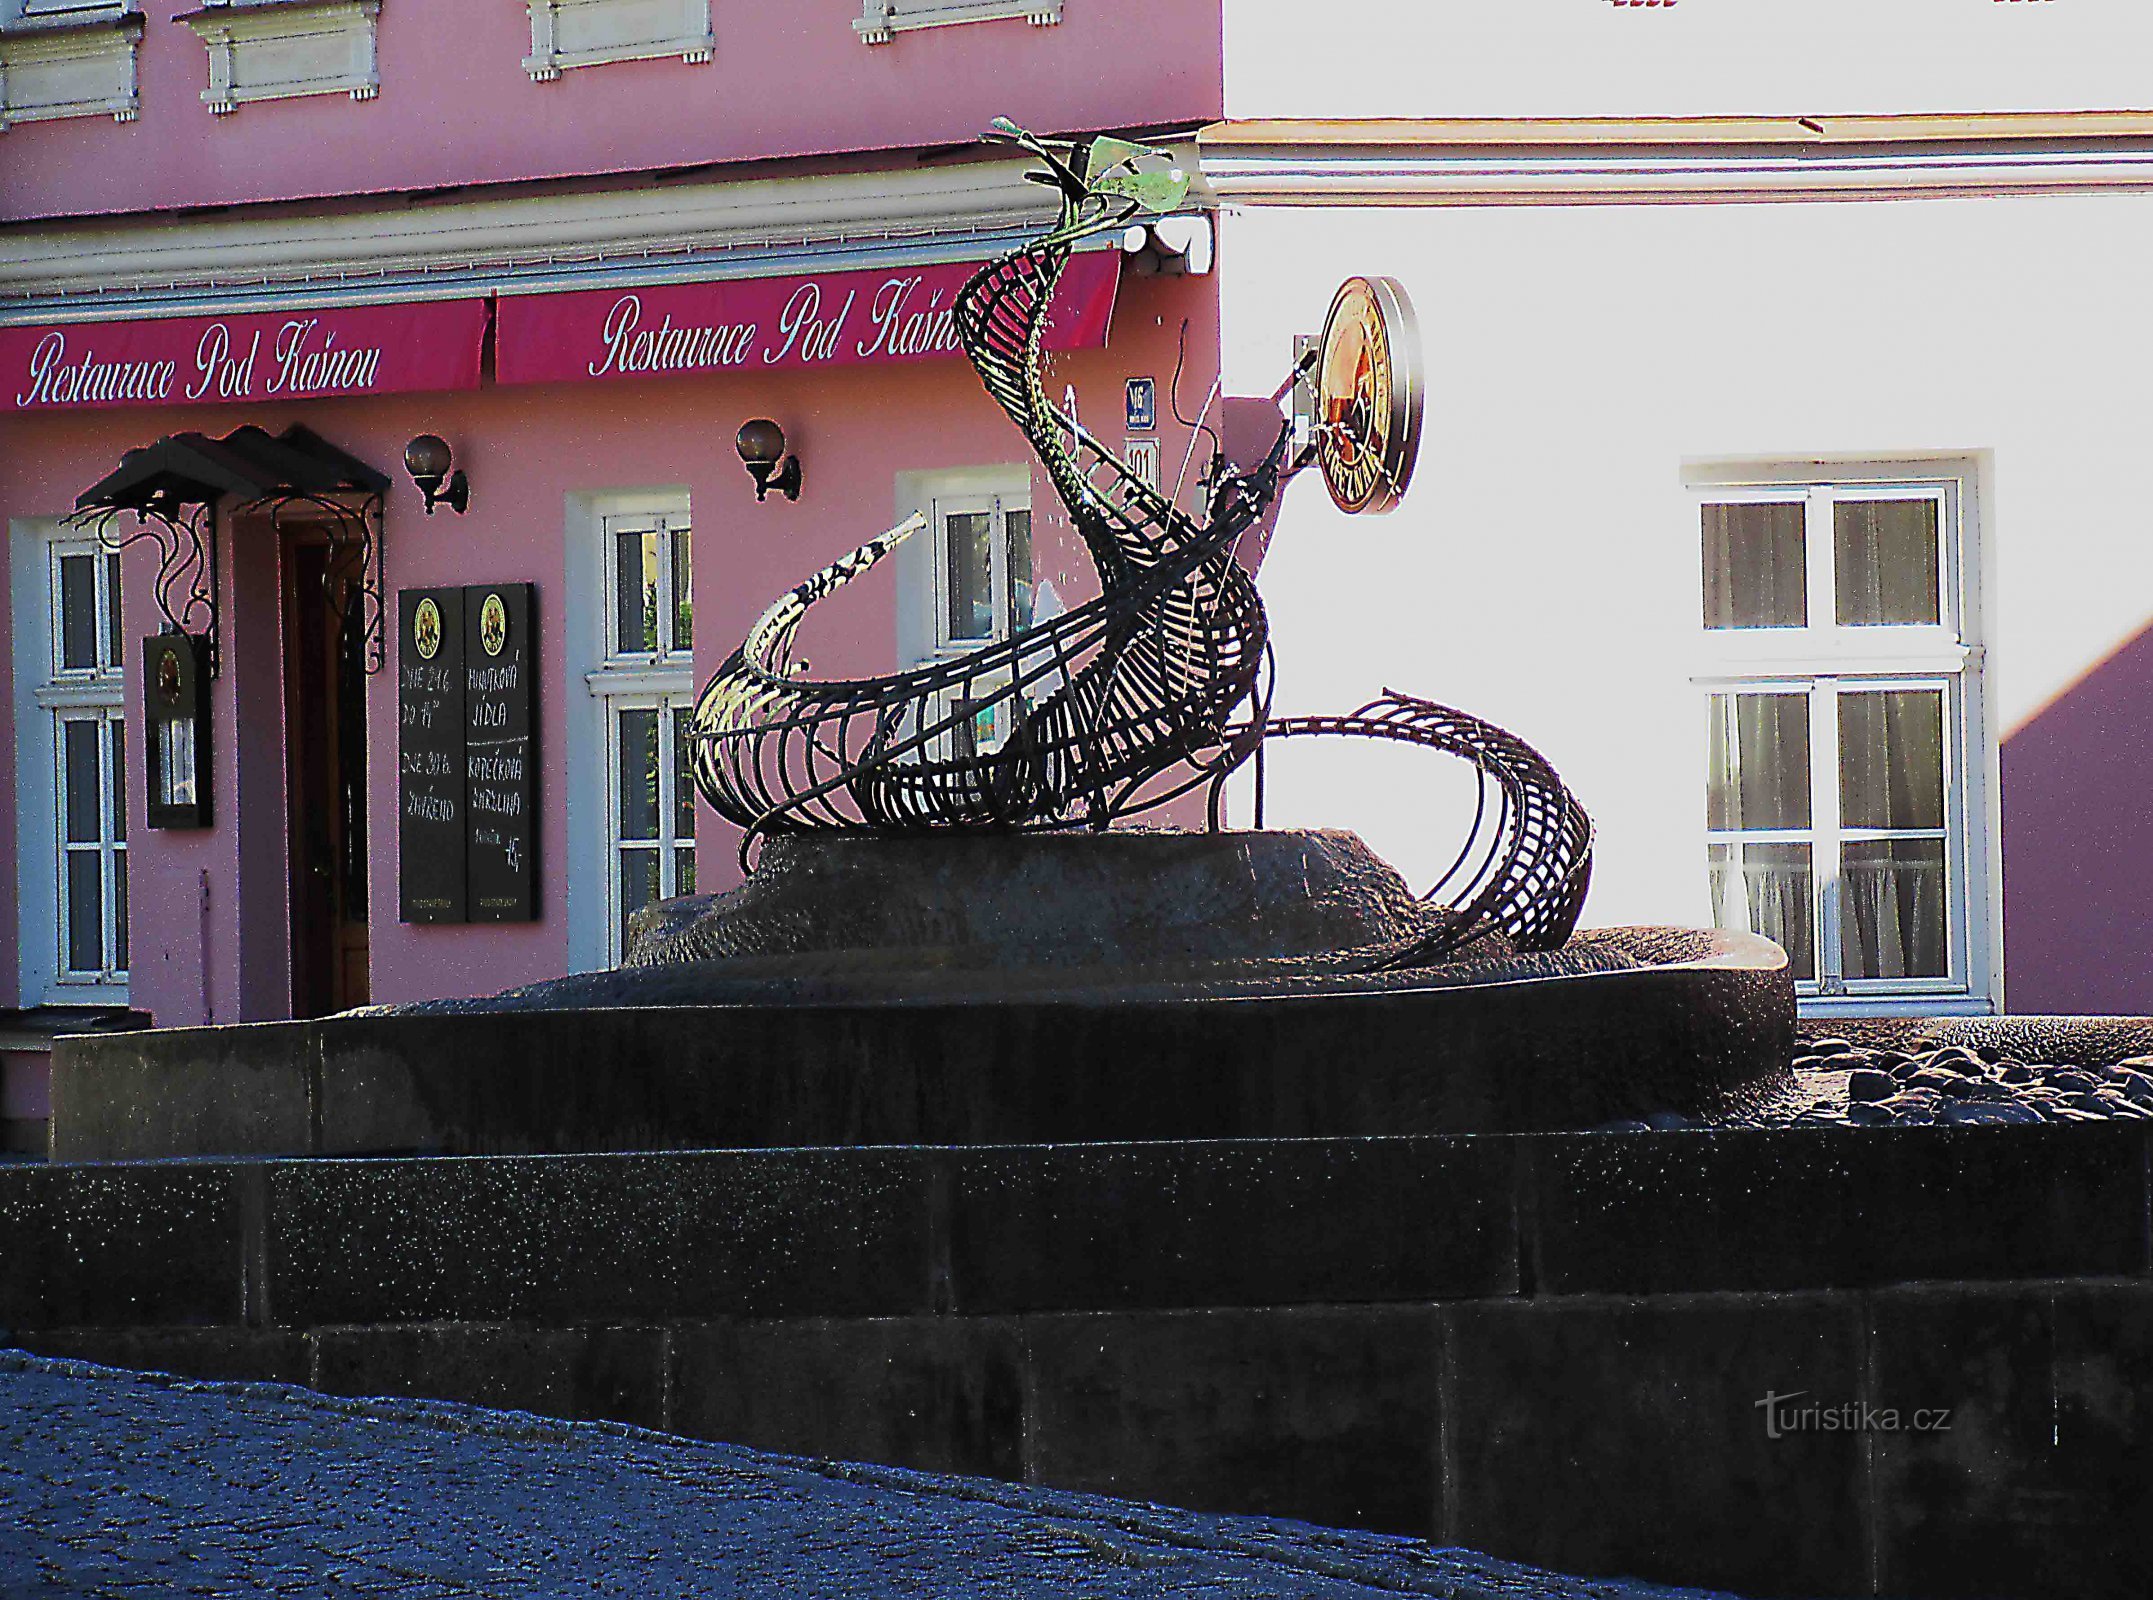 Fontane in una piazza pittoresca a Svitavy